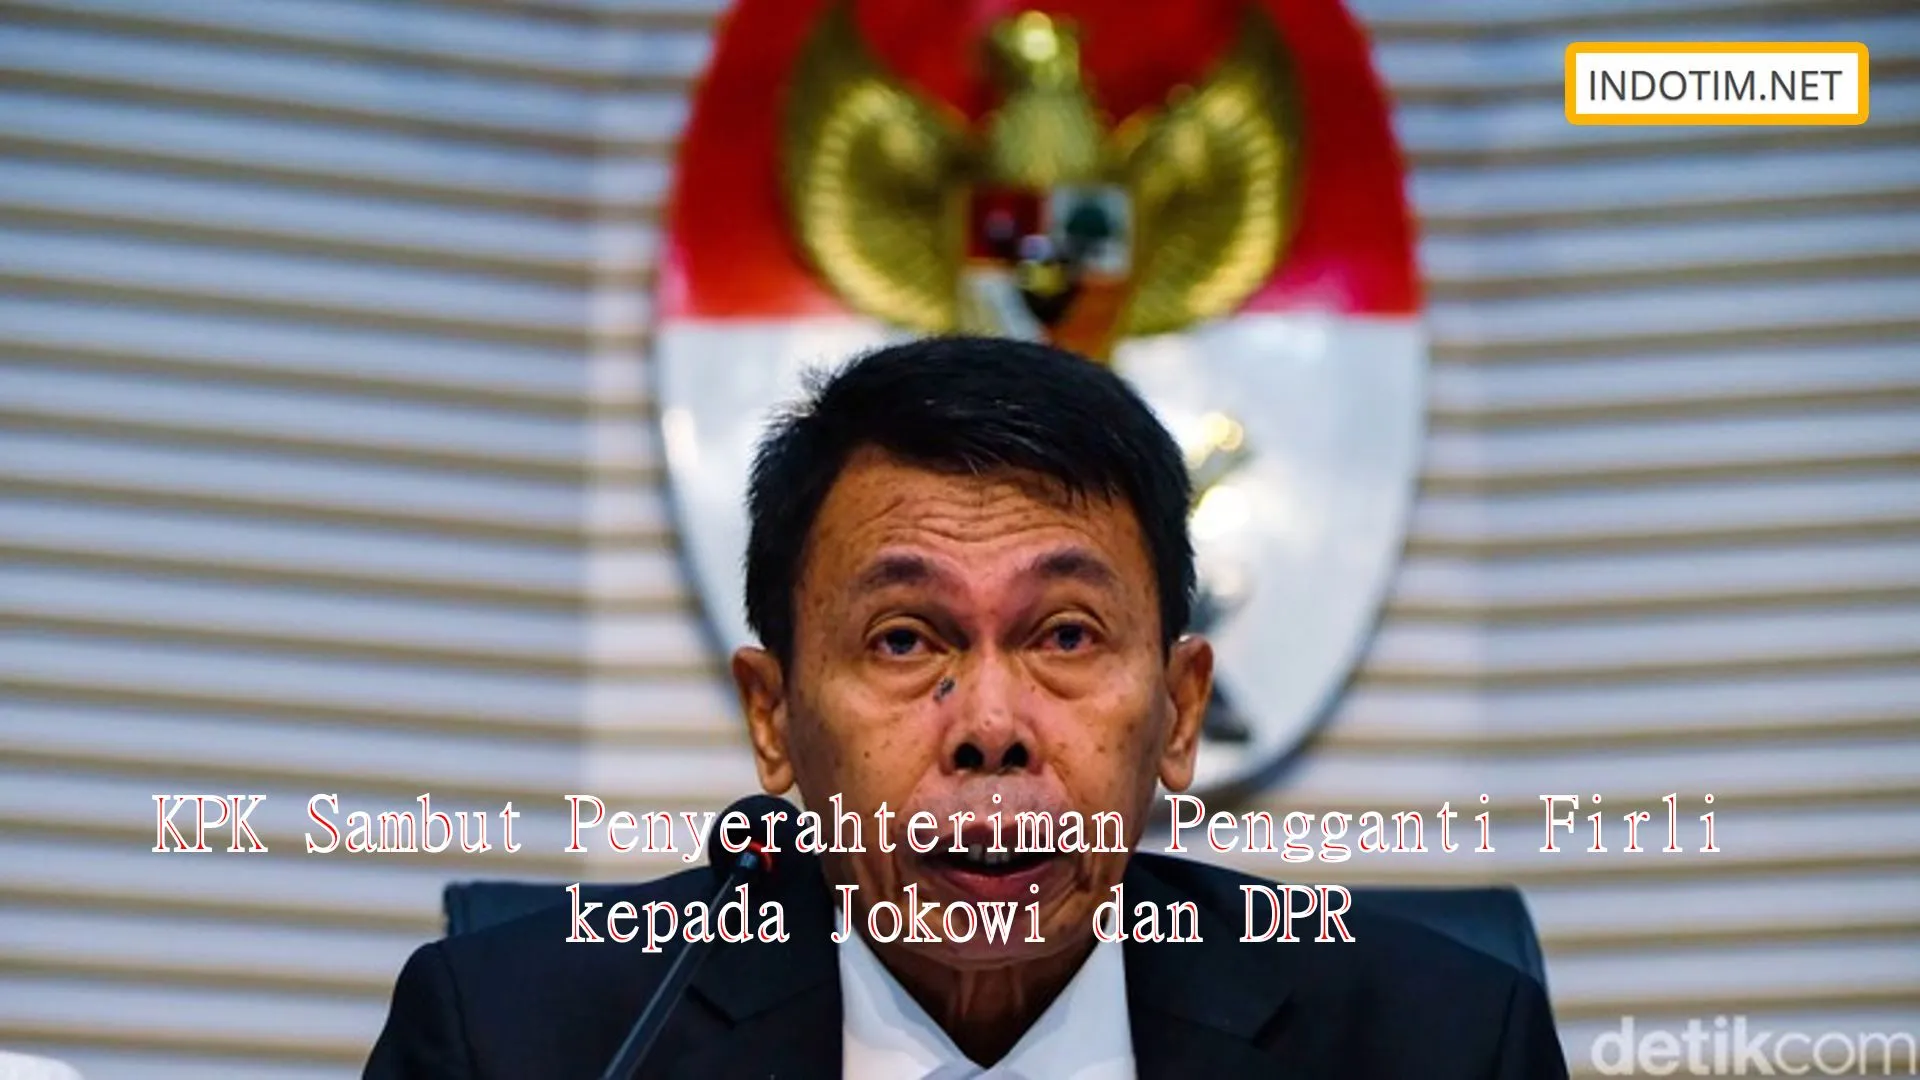 KPK Sambut Penyerahteriman Pengganti Firli kepada Jokowi dan DPR